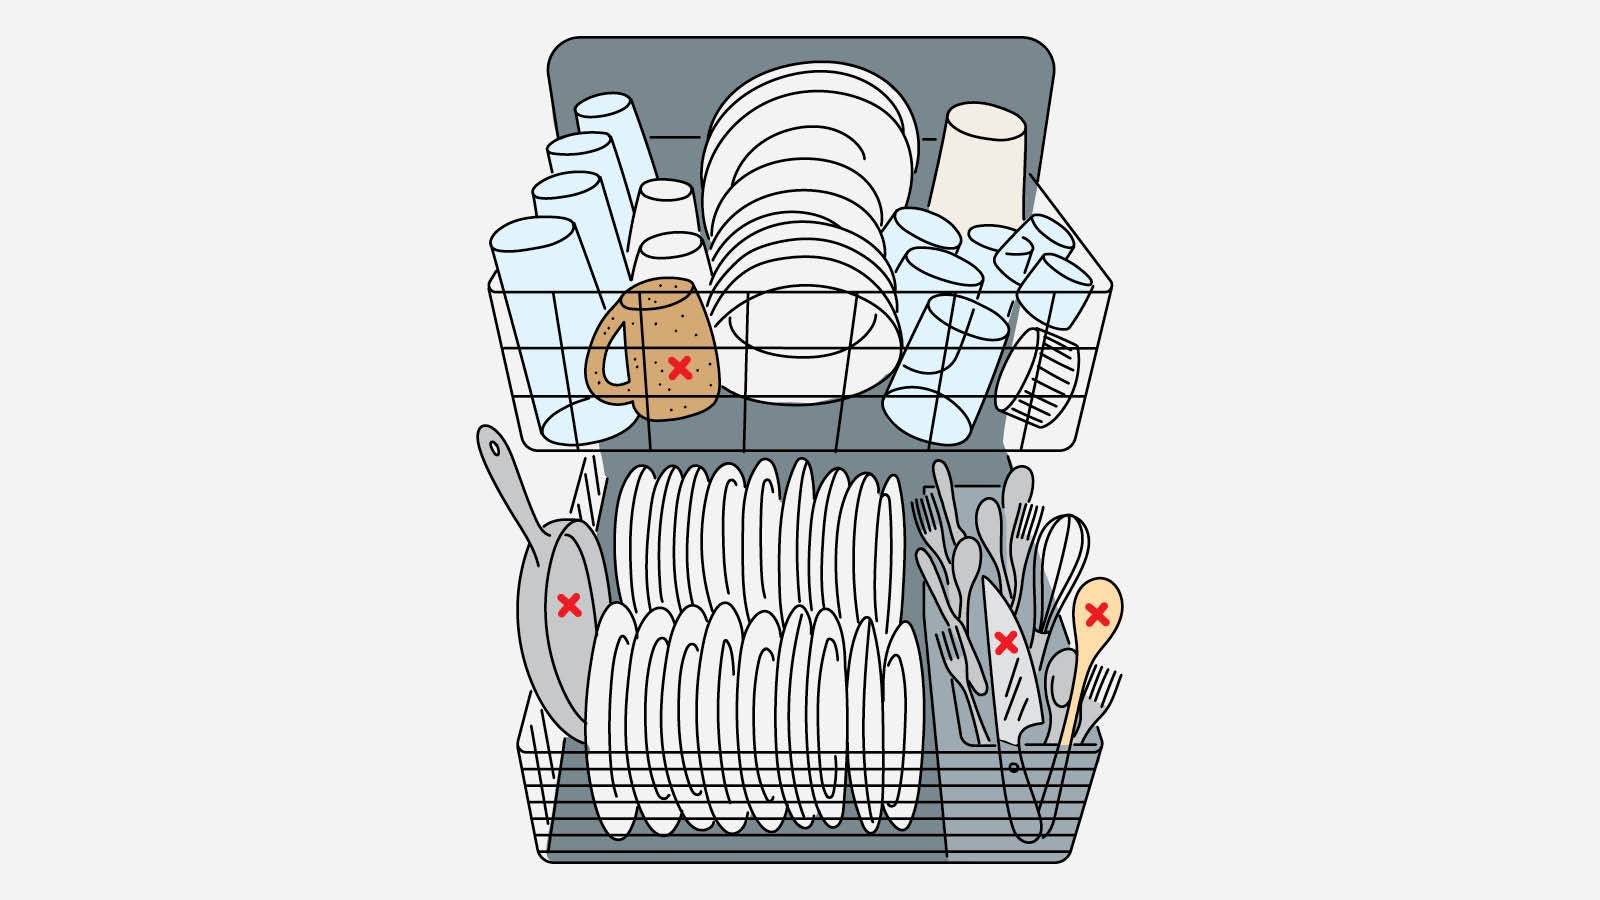 Как загрузить посудомоечную машину (с иллюстрациями)